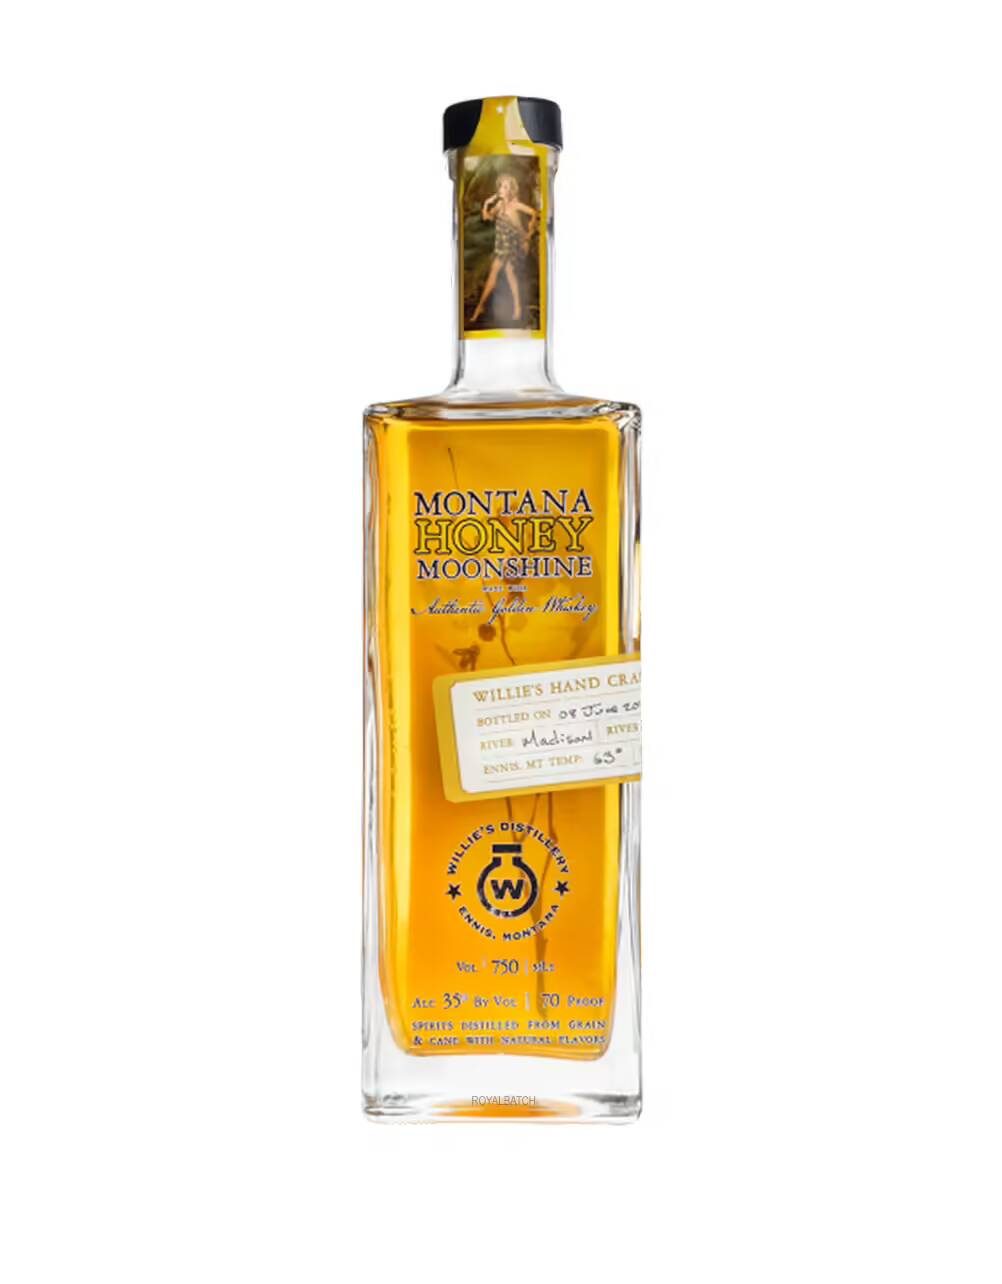 Montana Honey Moonshine